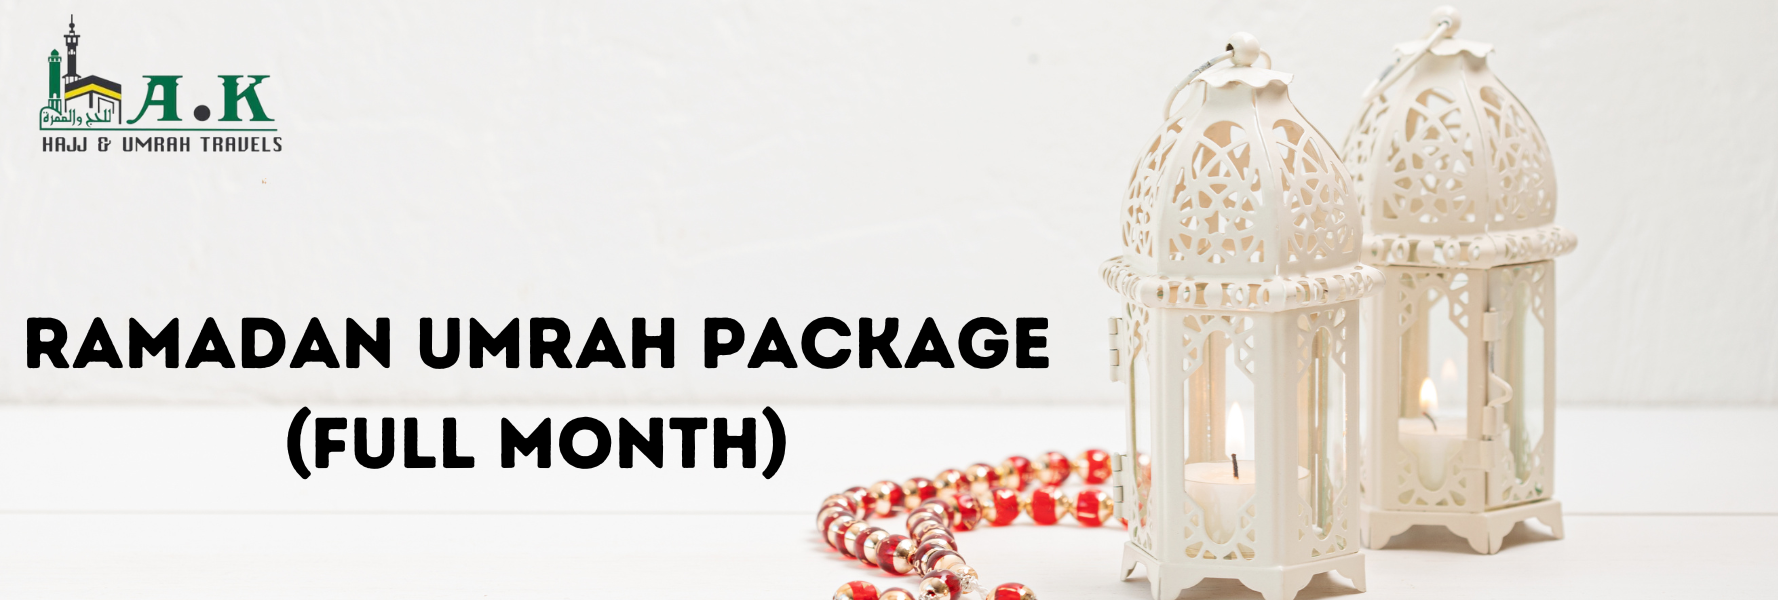 Full Month Ramadan Umrah Package